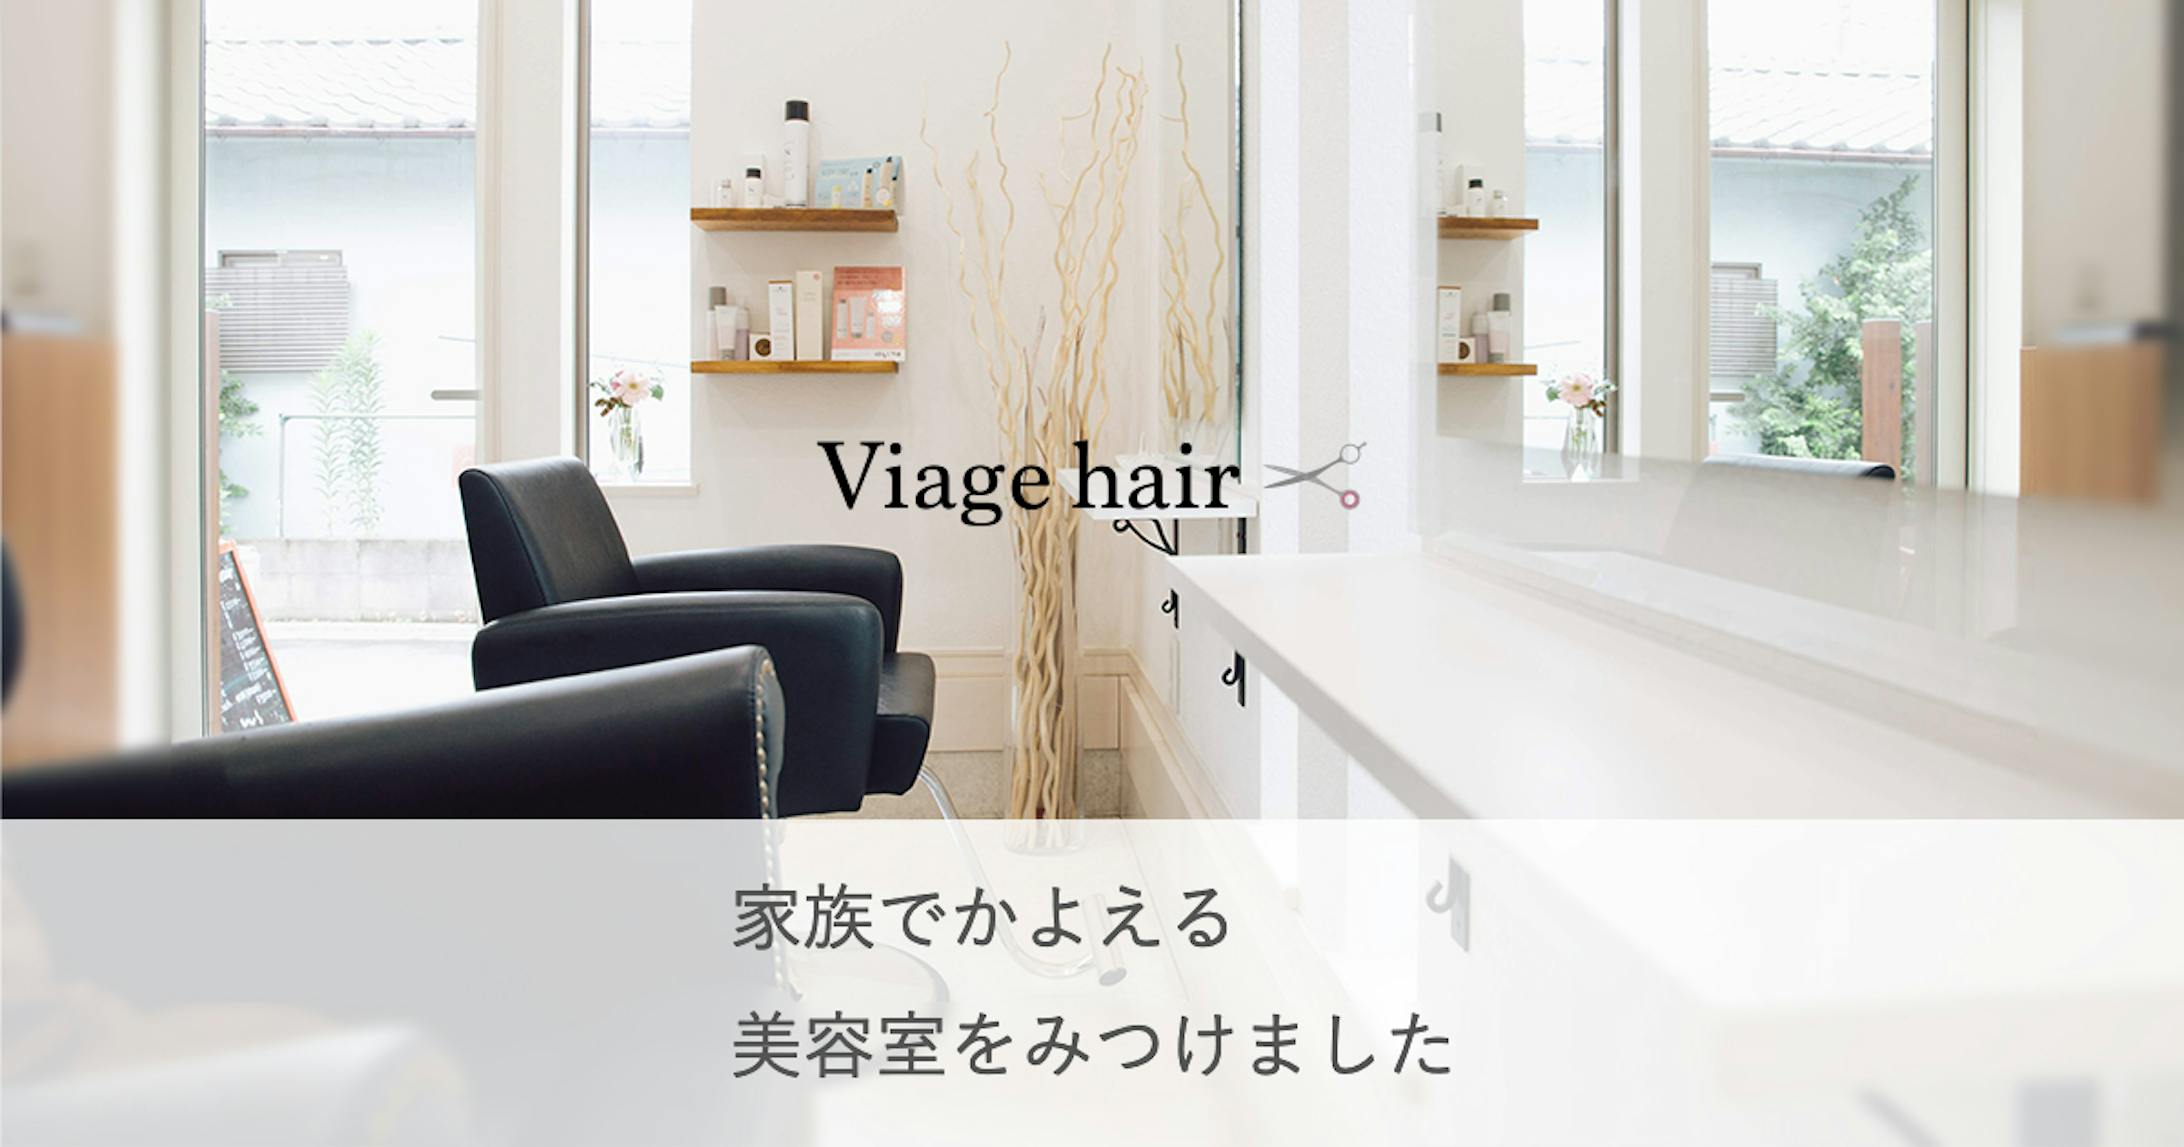 viage hair-2